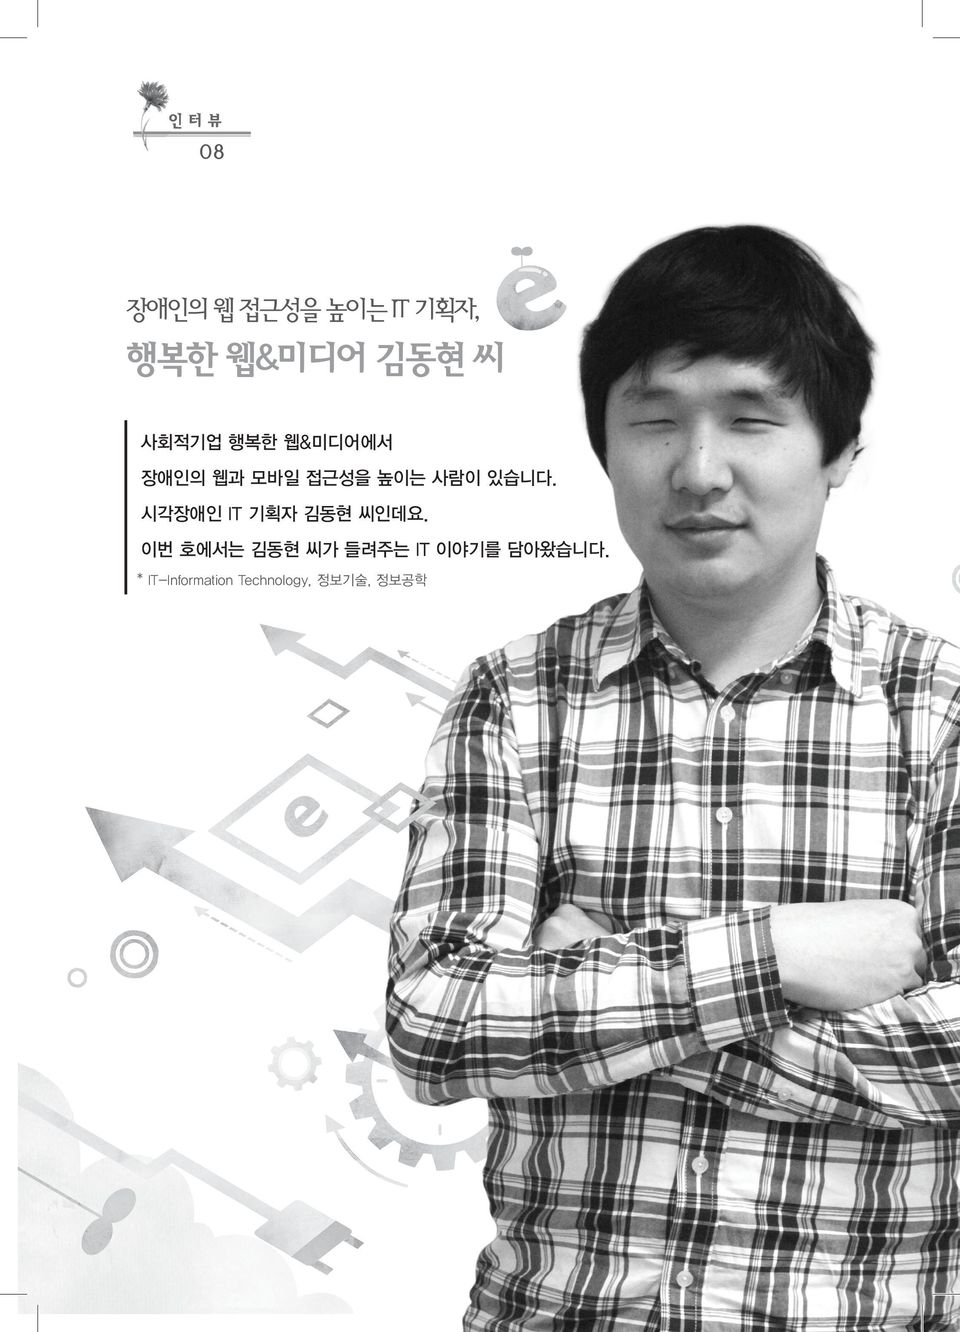 시각장애인 IT 기획자 김동현 씨인데요.